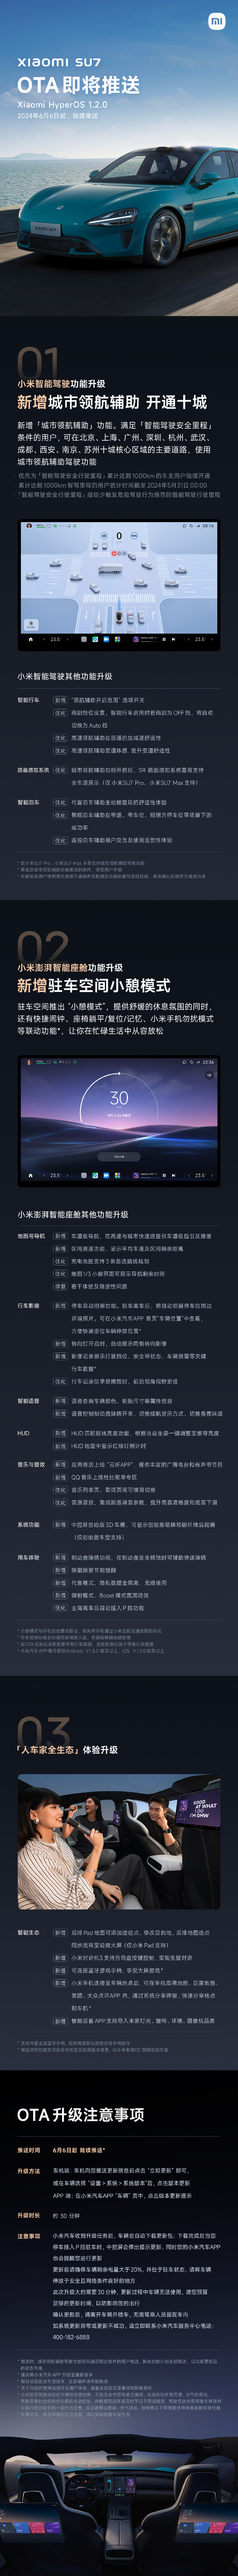 小米汽车 SU7 城市 NOA 开通北京、上海等十城，OTA 1.2.0 将于 6 月 6 日开启推送